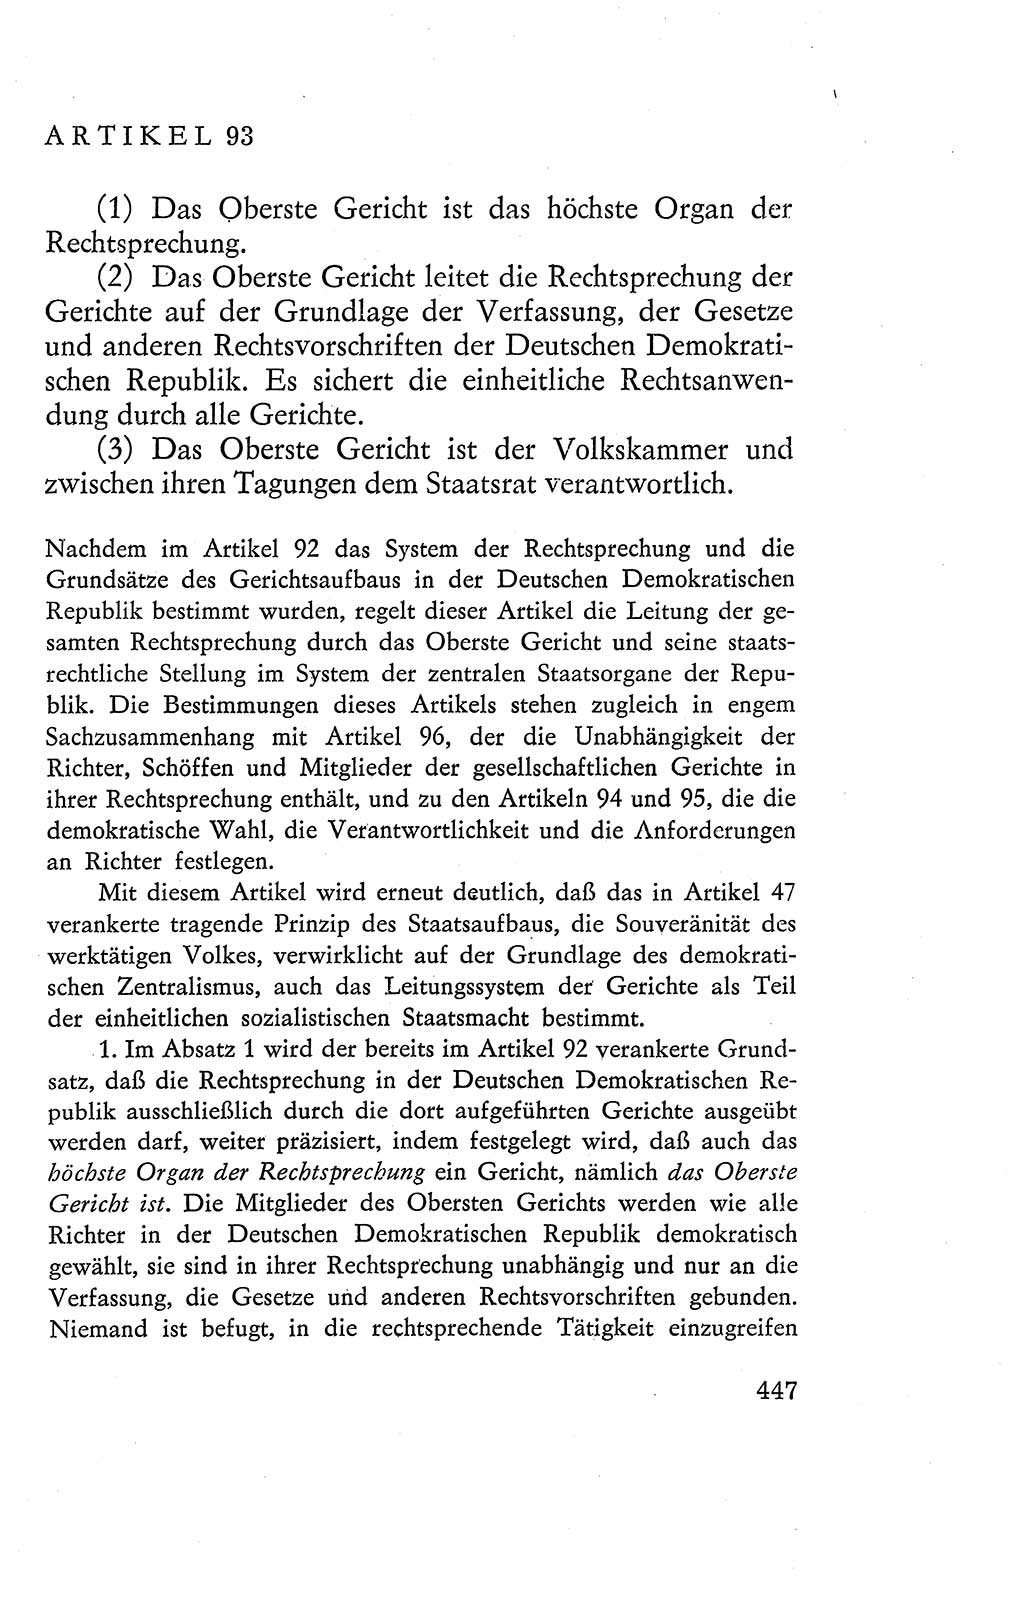 Verfassung der Deutschen Demokratischen Republik (DDR), Dokumente, Kommentar 1969, Band 2, Seite 447 (Verf. DDR Dok. Komm. 1969, Bd. 2, S. 447)